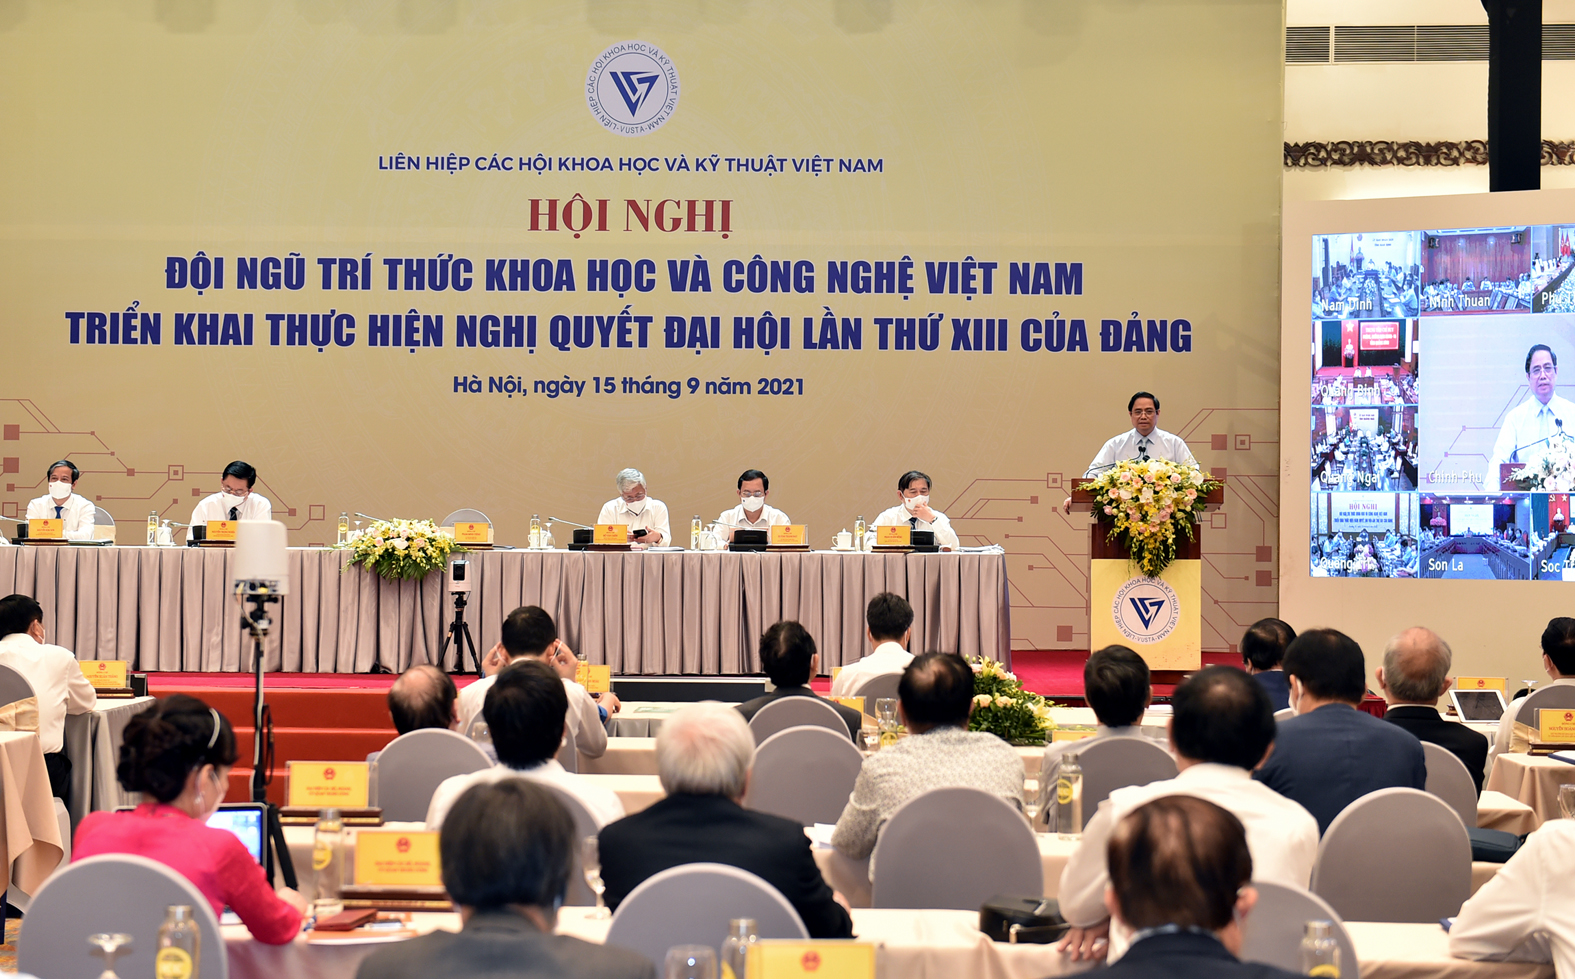 Thủ tướng Phạm Minh Chính: Cần có nhận thức mới, tư duy khoa học mới cho phát triển Đất nước